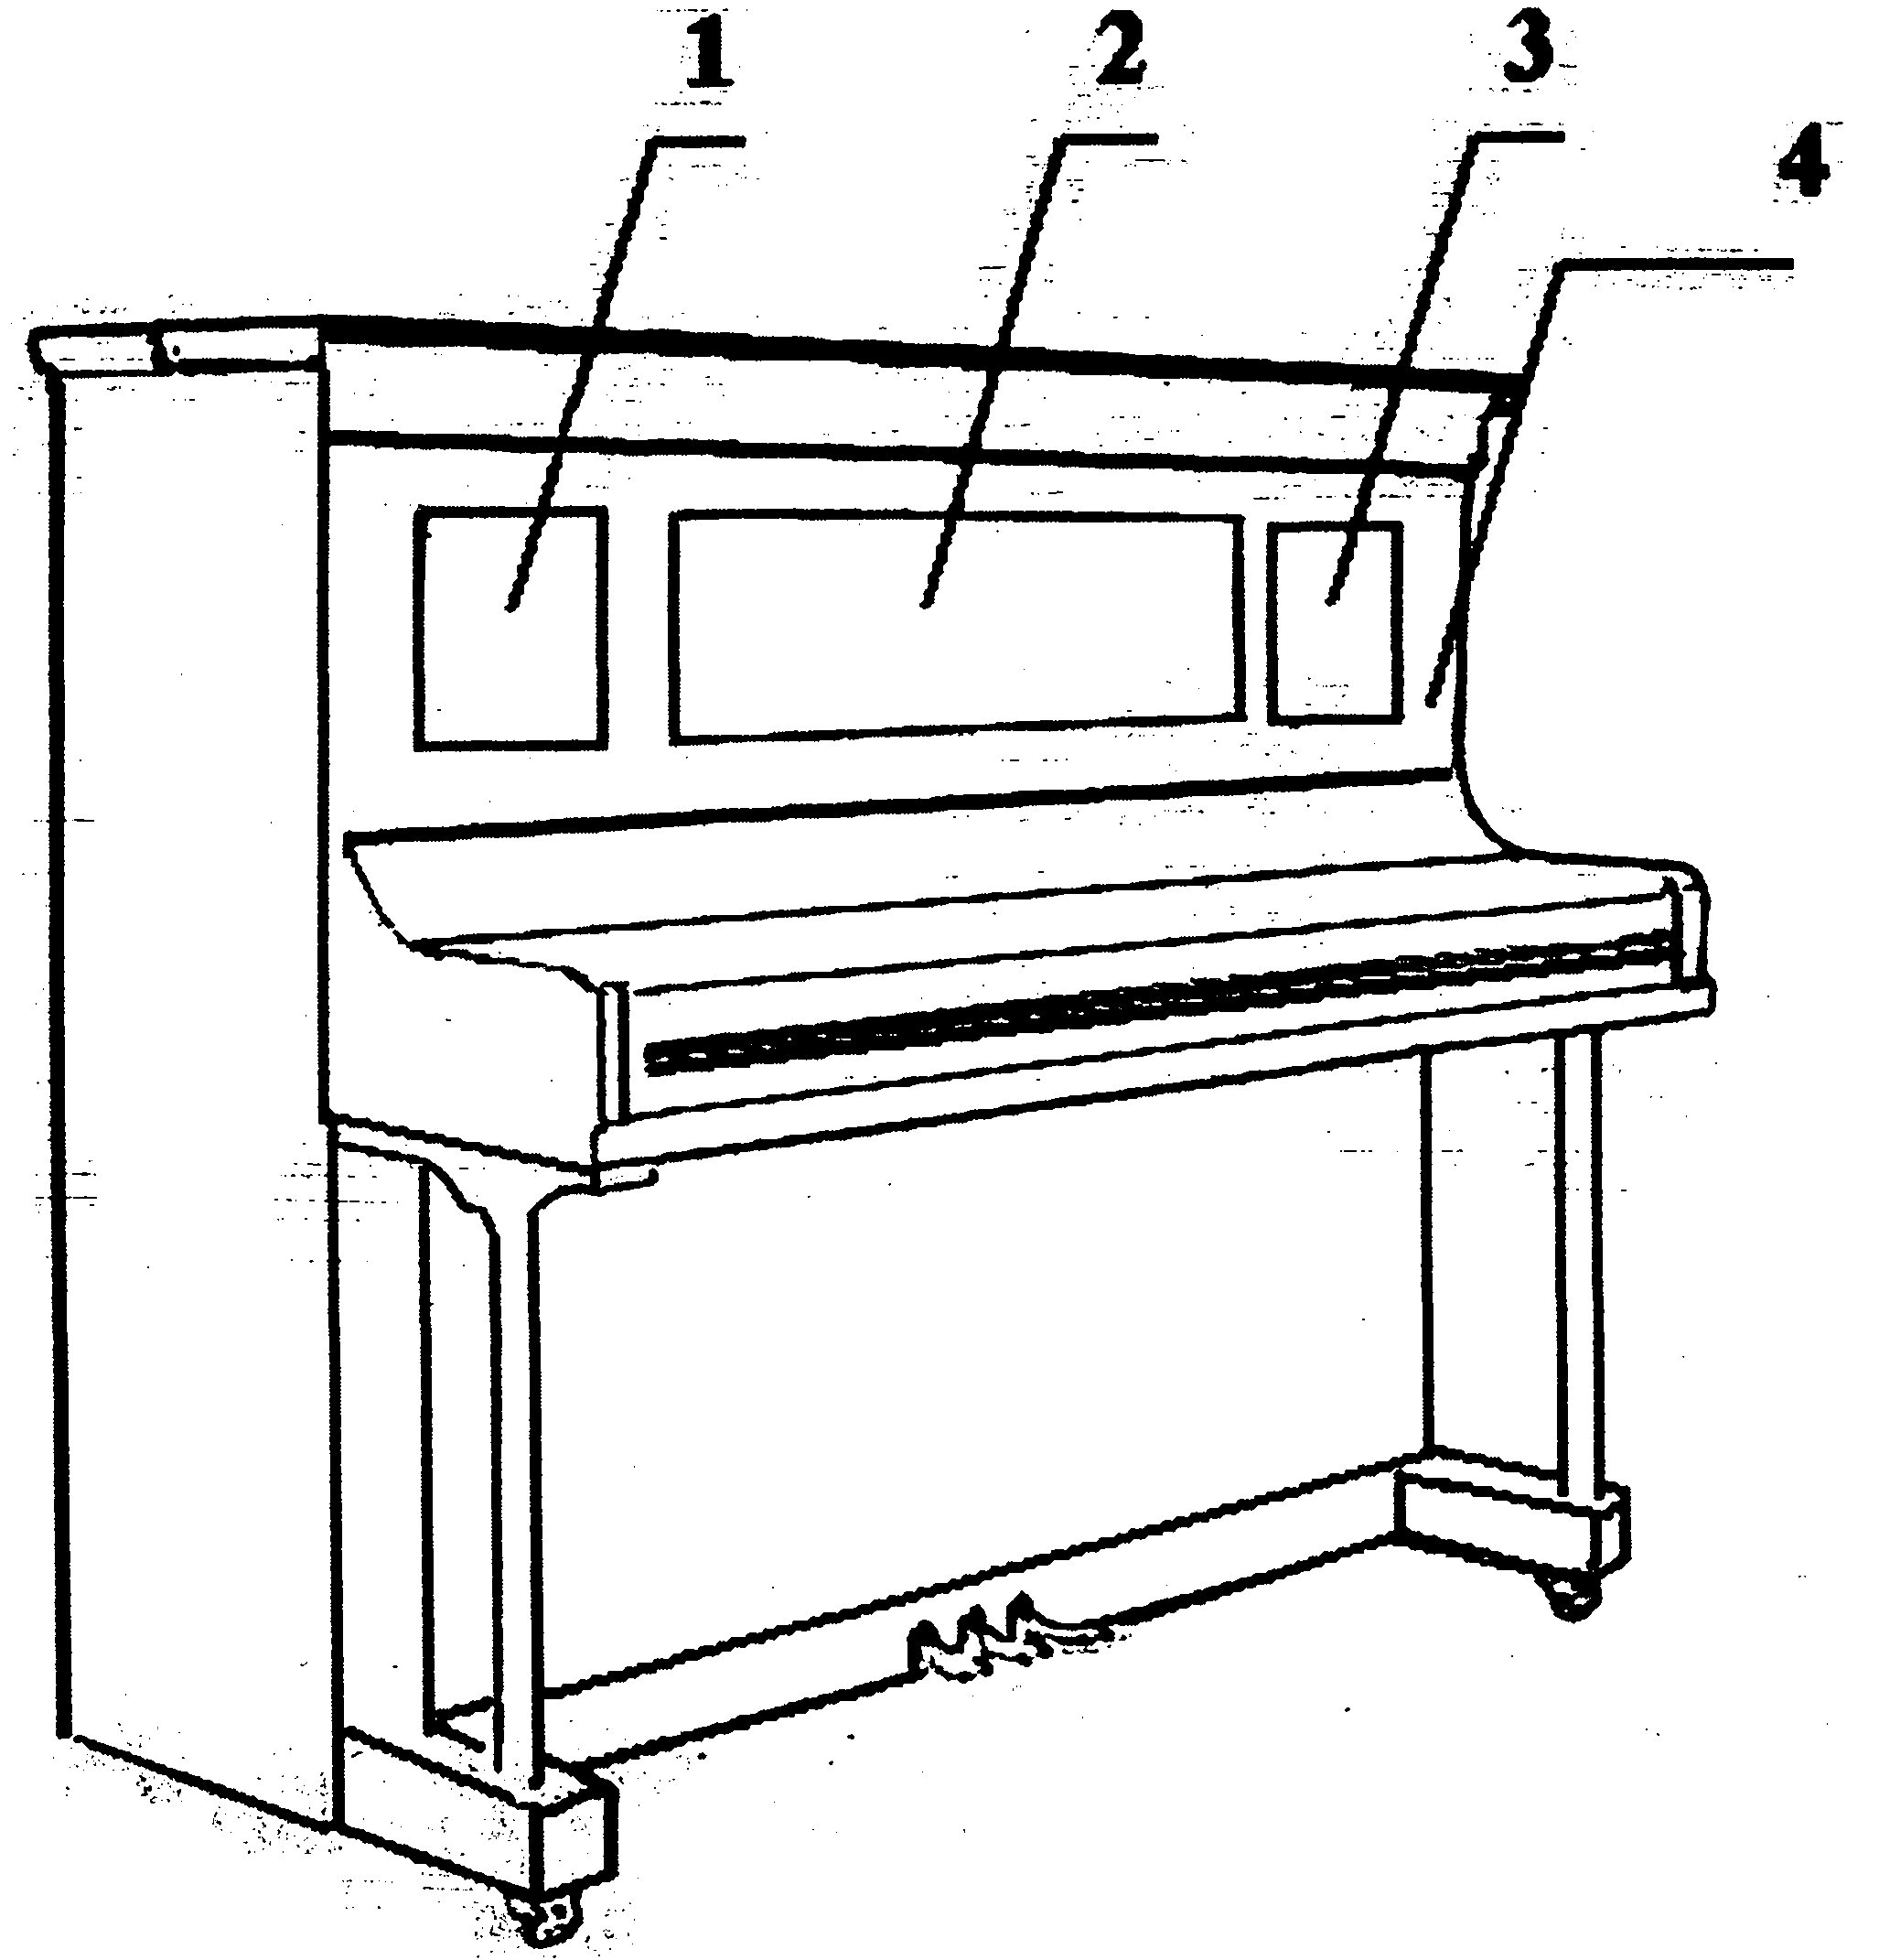 Vertical piano pre-positioned sound board